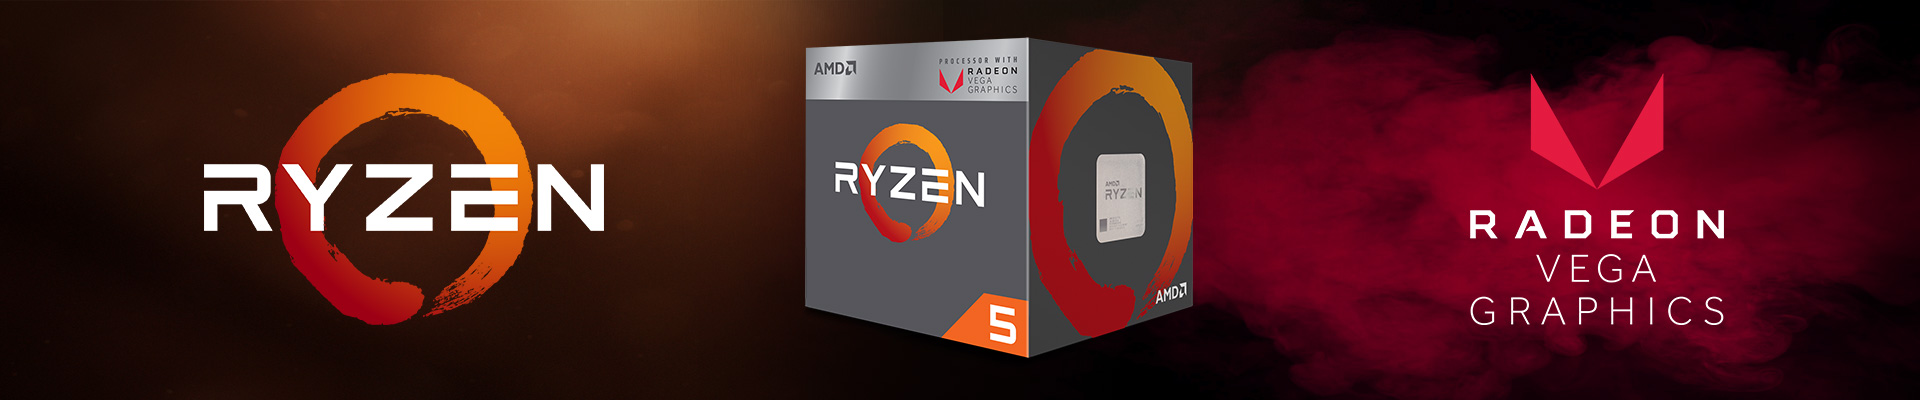 AMD Ryzen 5 2400G (Up to 3.9Ghz/ 6Mb cache) Ryzen